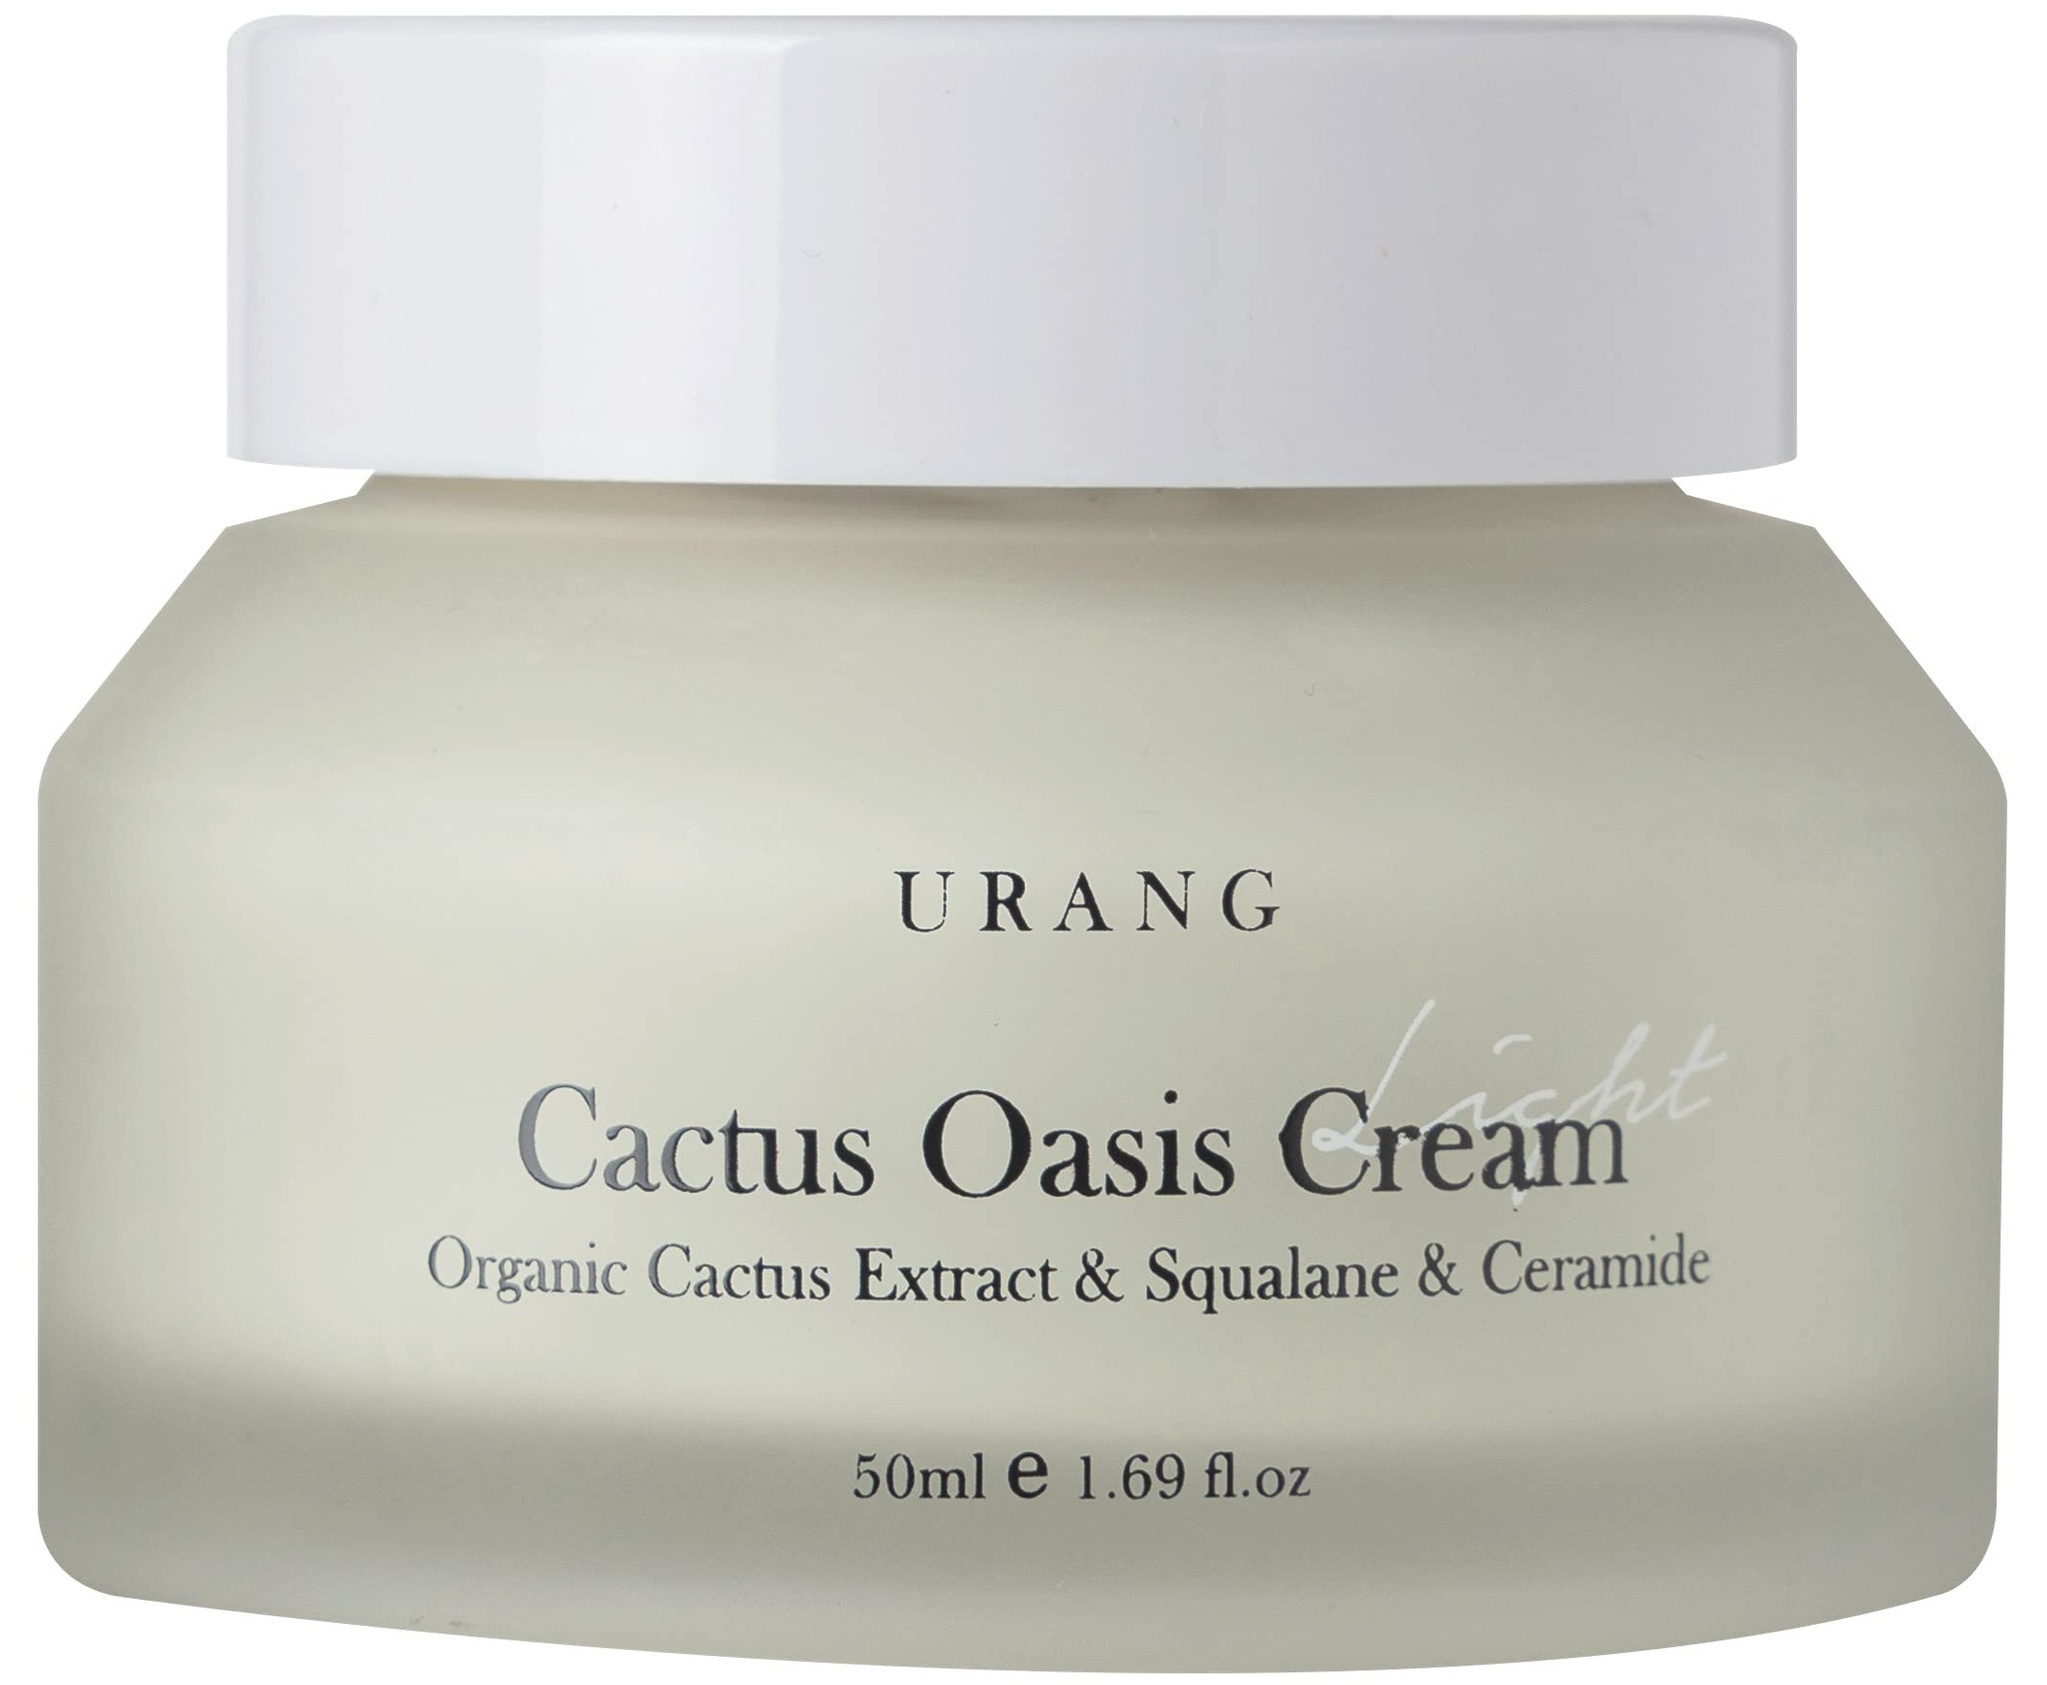 URANG Cactus Oasis Cream